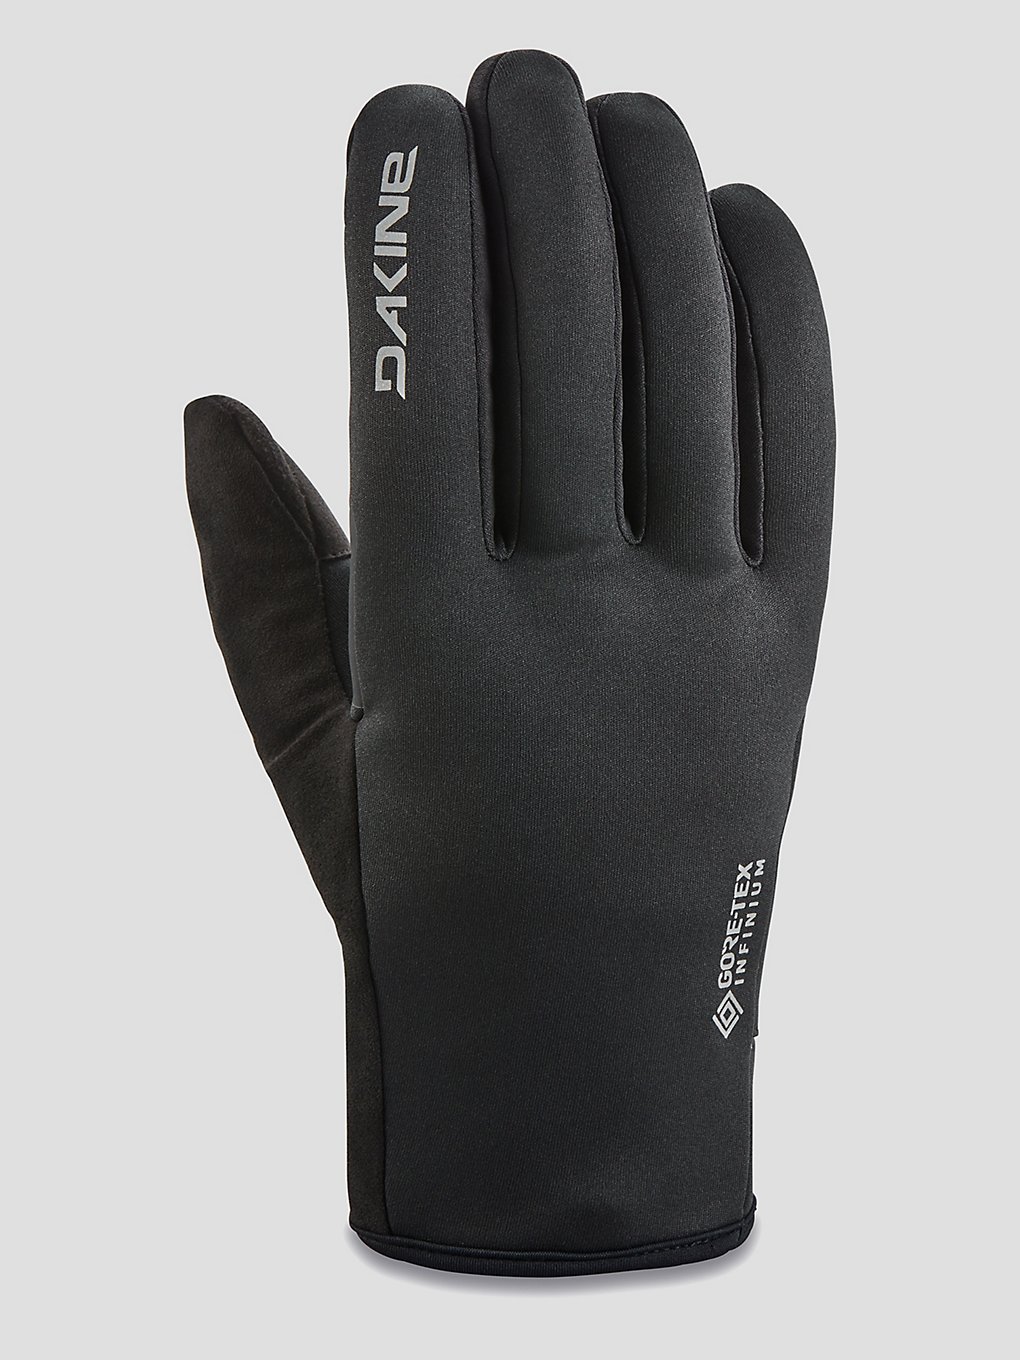 Dakine Blockade Infinium Handschoenen zwart